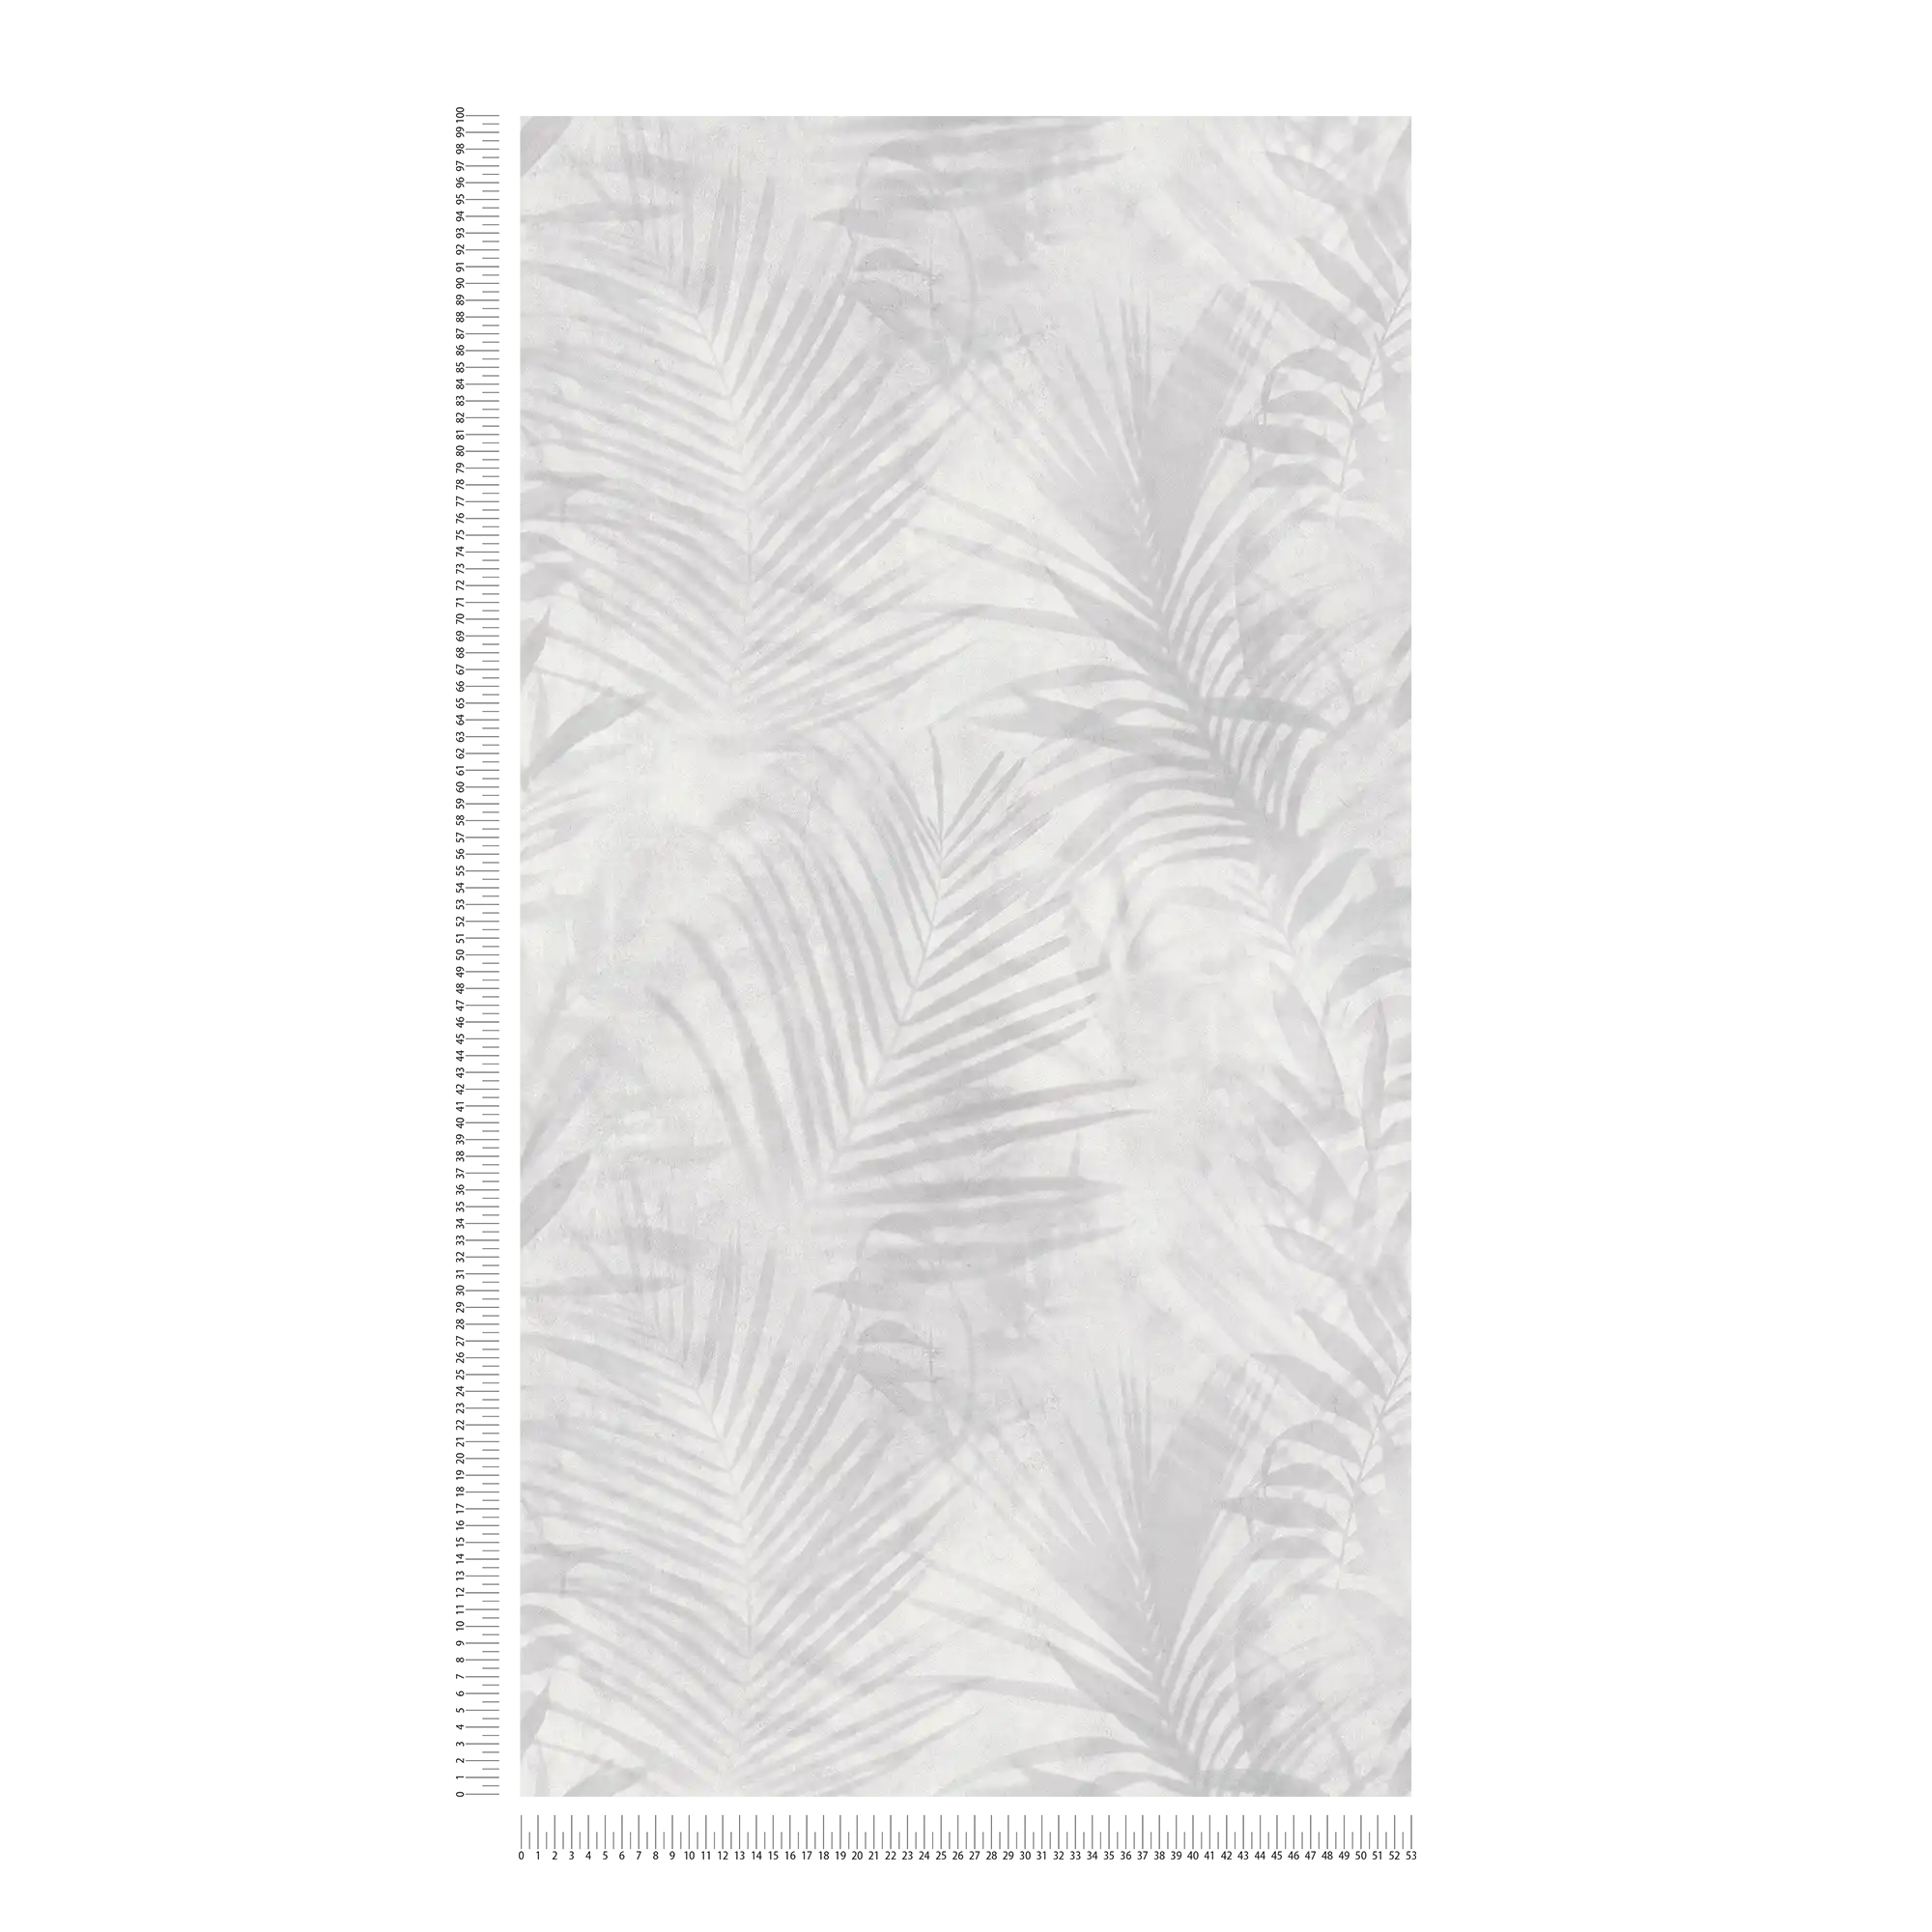             papel pintado con motivos de palmeras en aspecto de lino - gris, blanco, crema
        